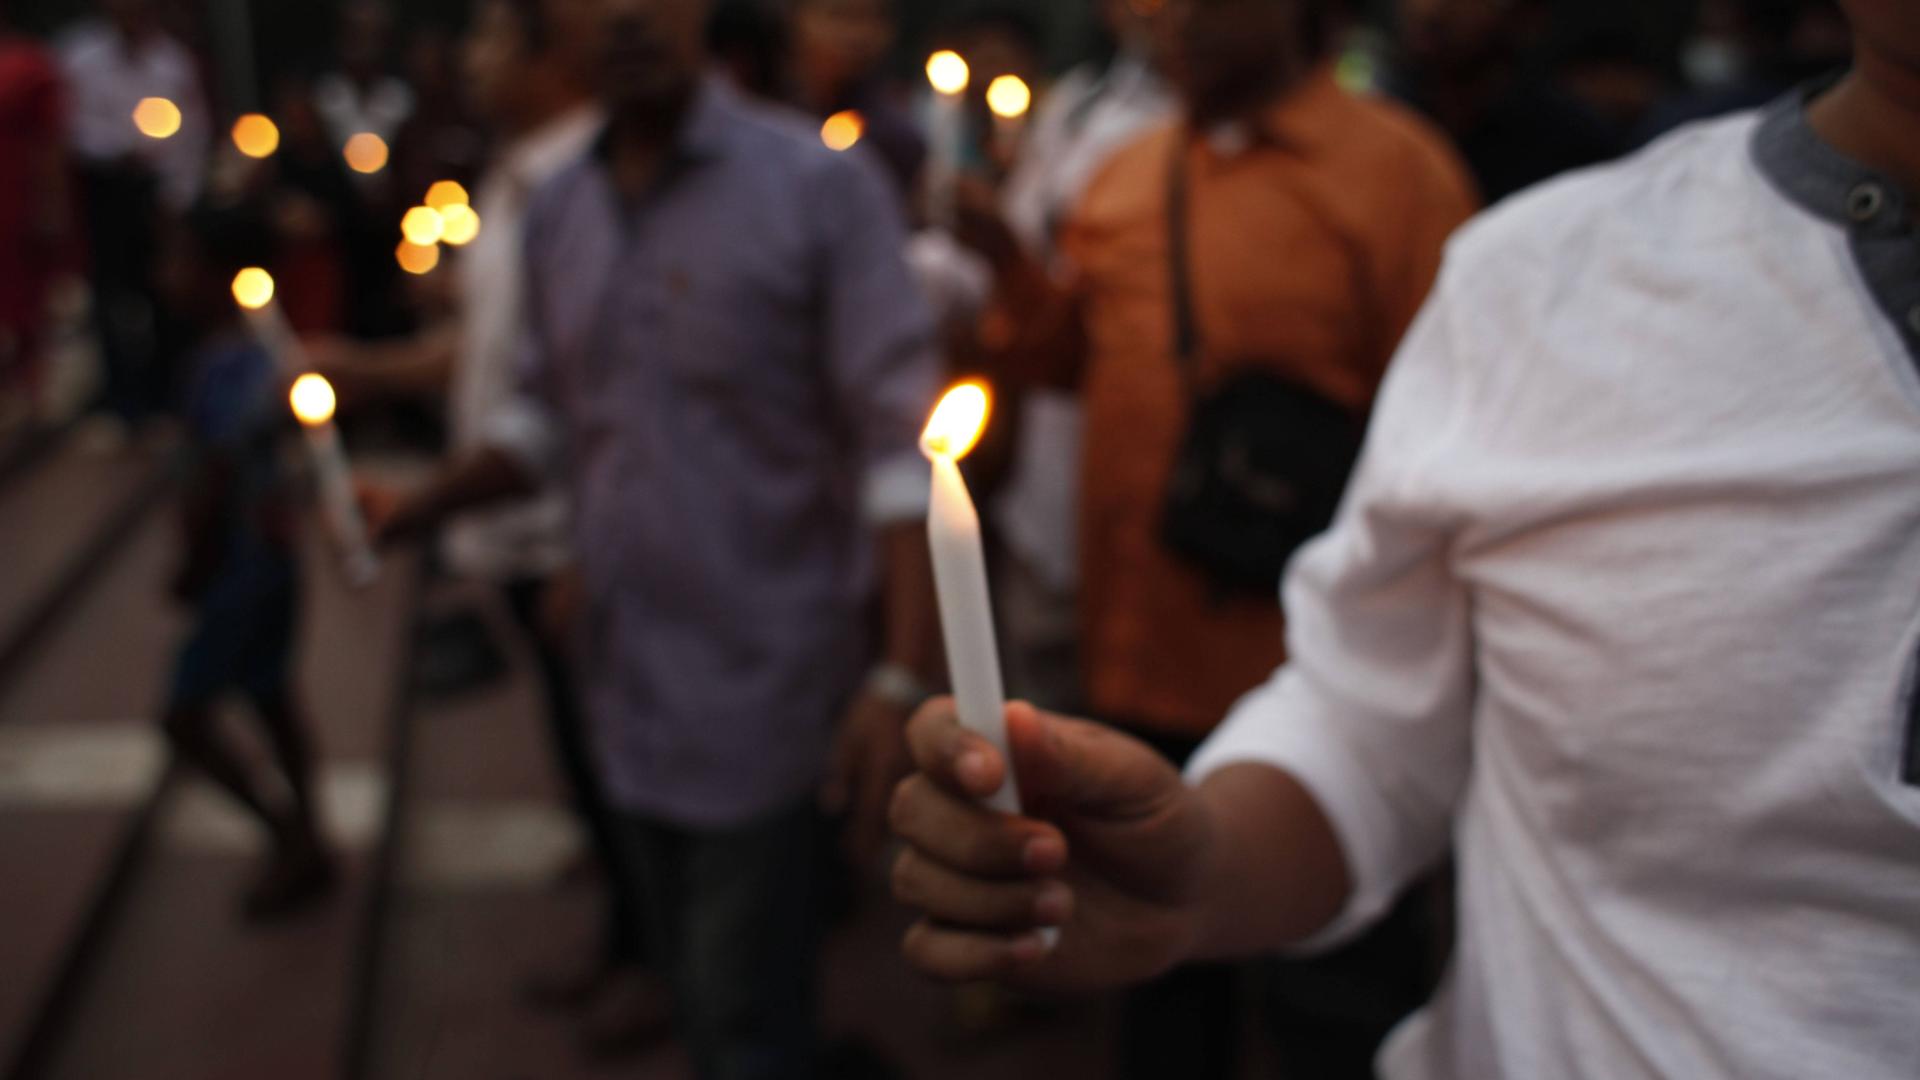 Ein Mann hält eine brennende weiße Kerze in der Hand, aufgenommen am 28.11.2016 bei einer Gedenkfeier für den kubanischen Revolutionsführer Fidel Castro in Dhaka, Bangladesch